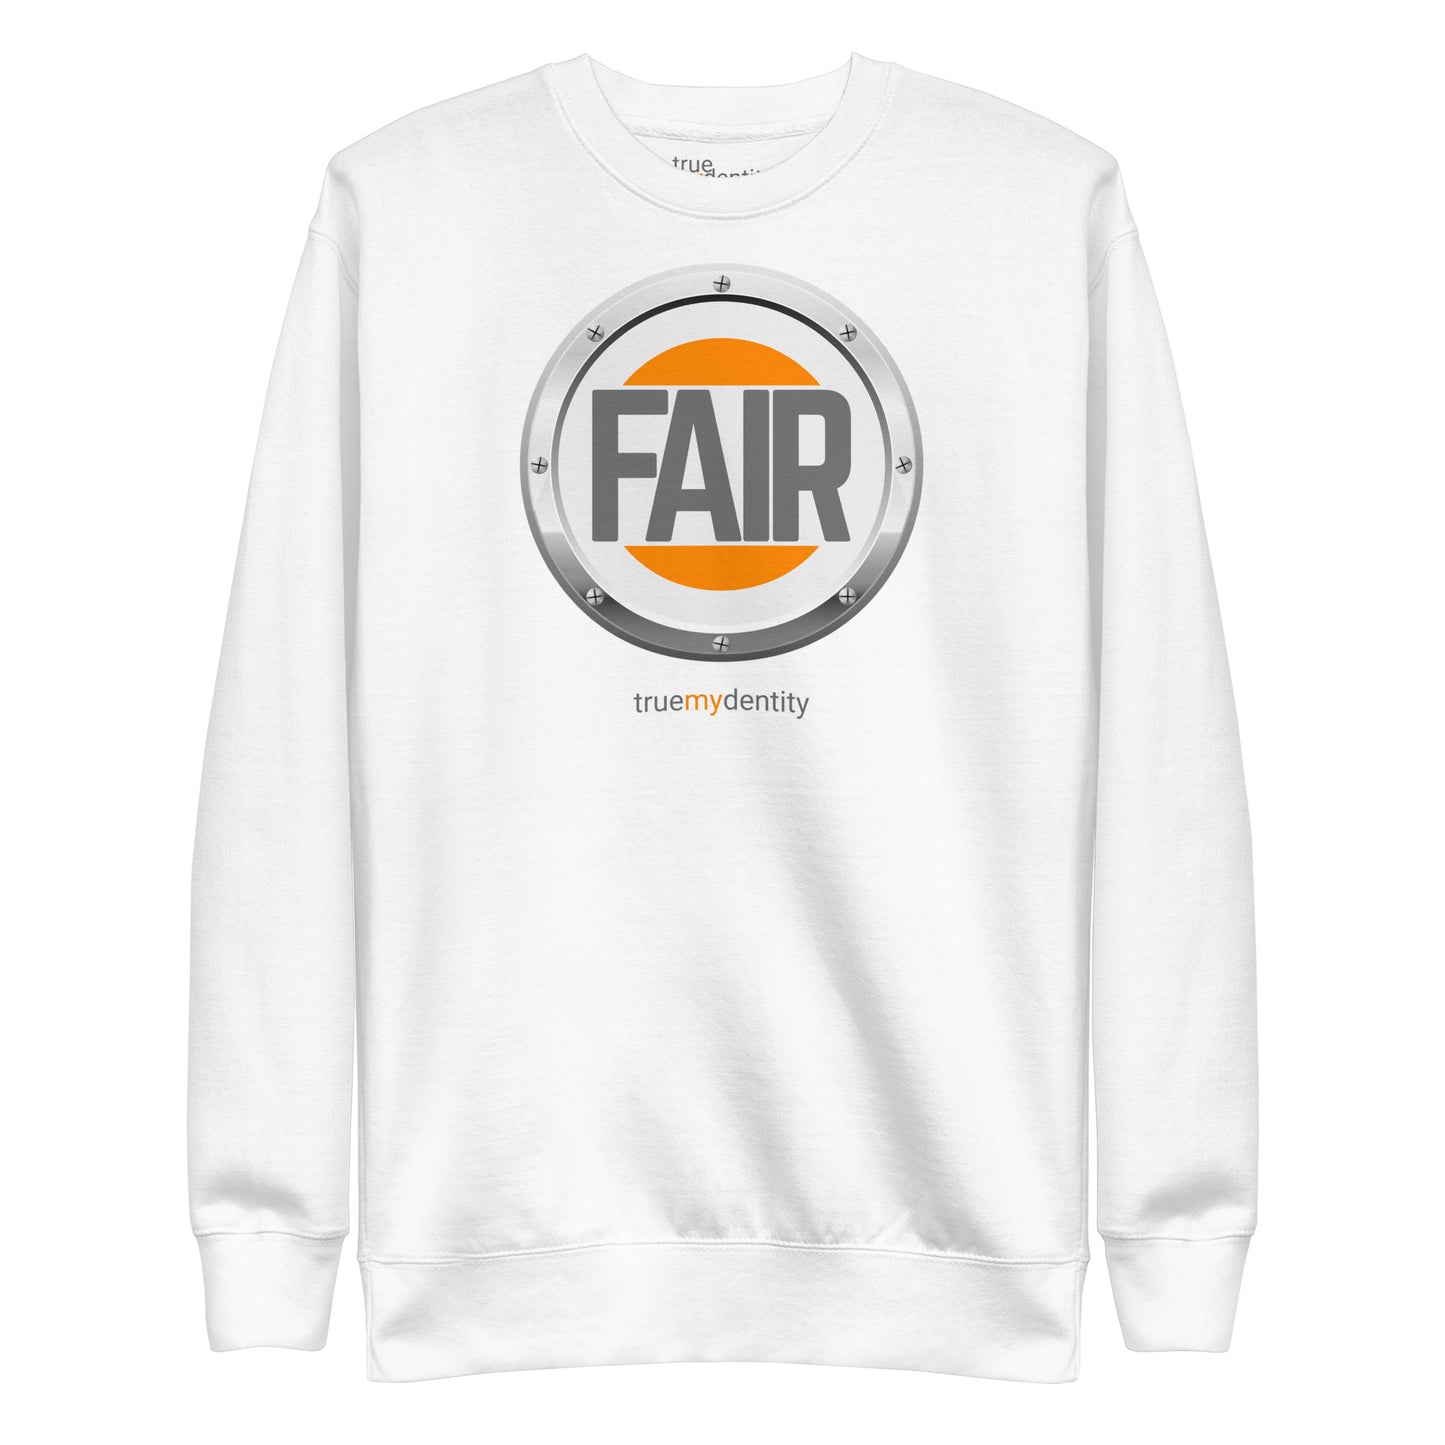 FAIR Sweatshirt Core Design | Unisex